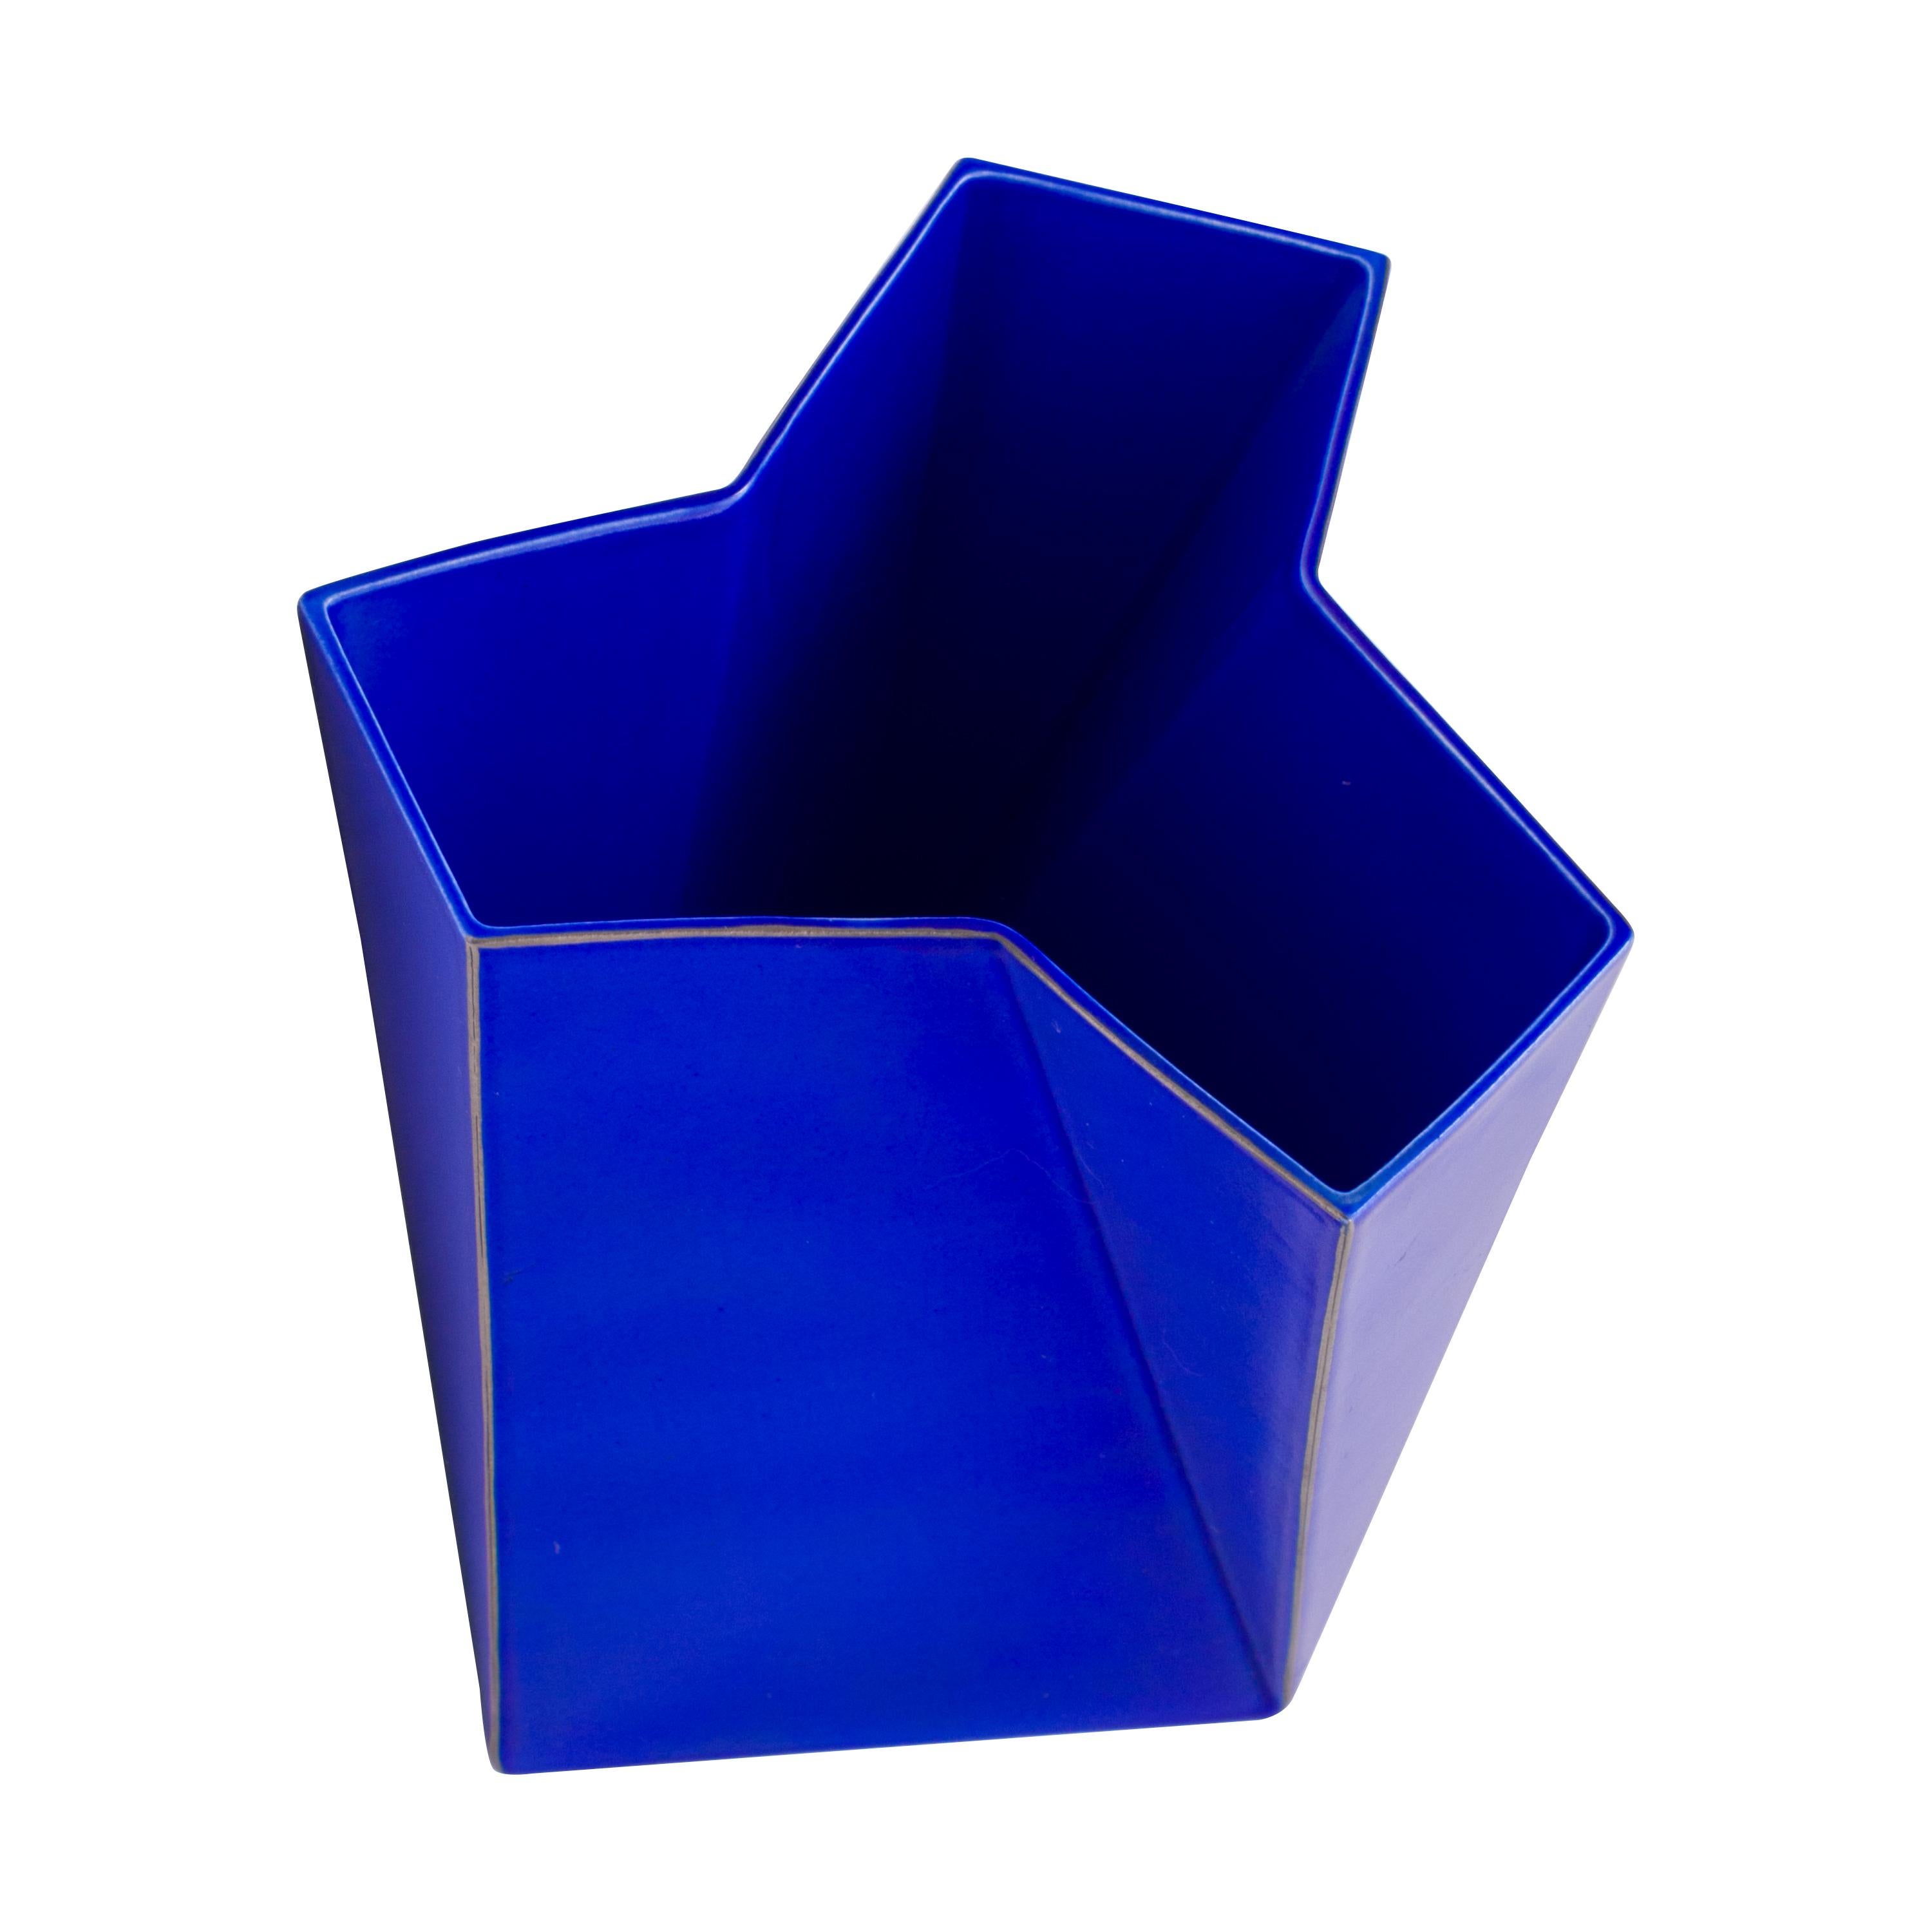 Glazed Bing & Grondahl Geometric Blue Porcelain Futura Vase by Else Kamp, Denmark 1980s